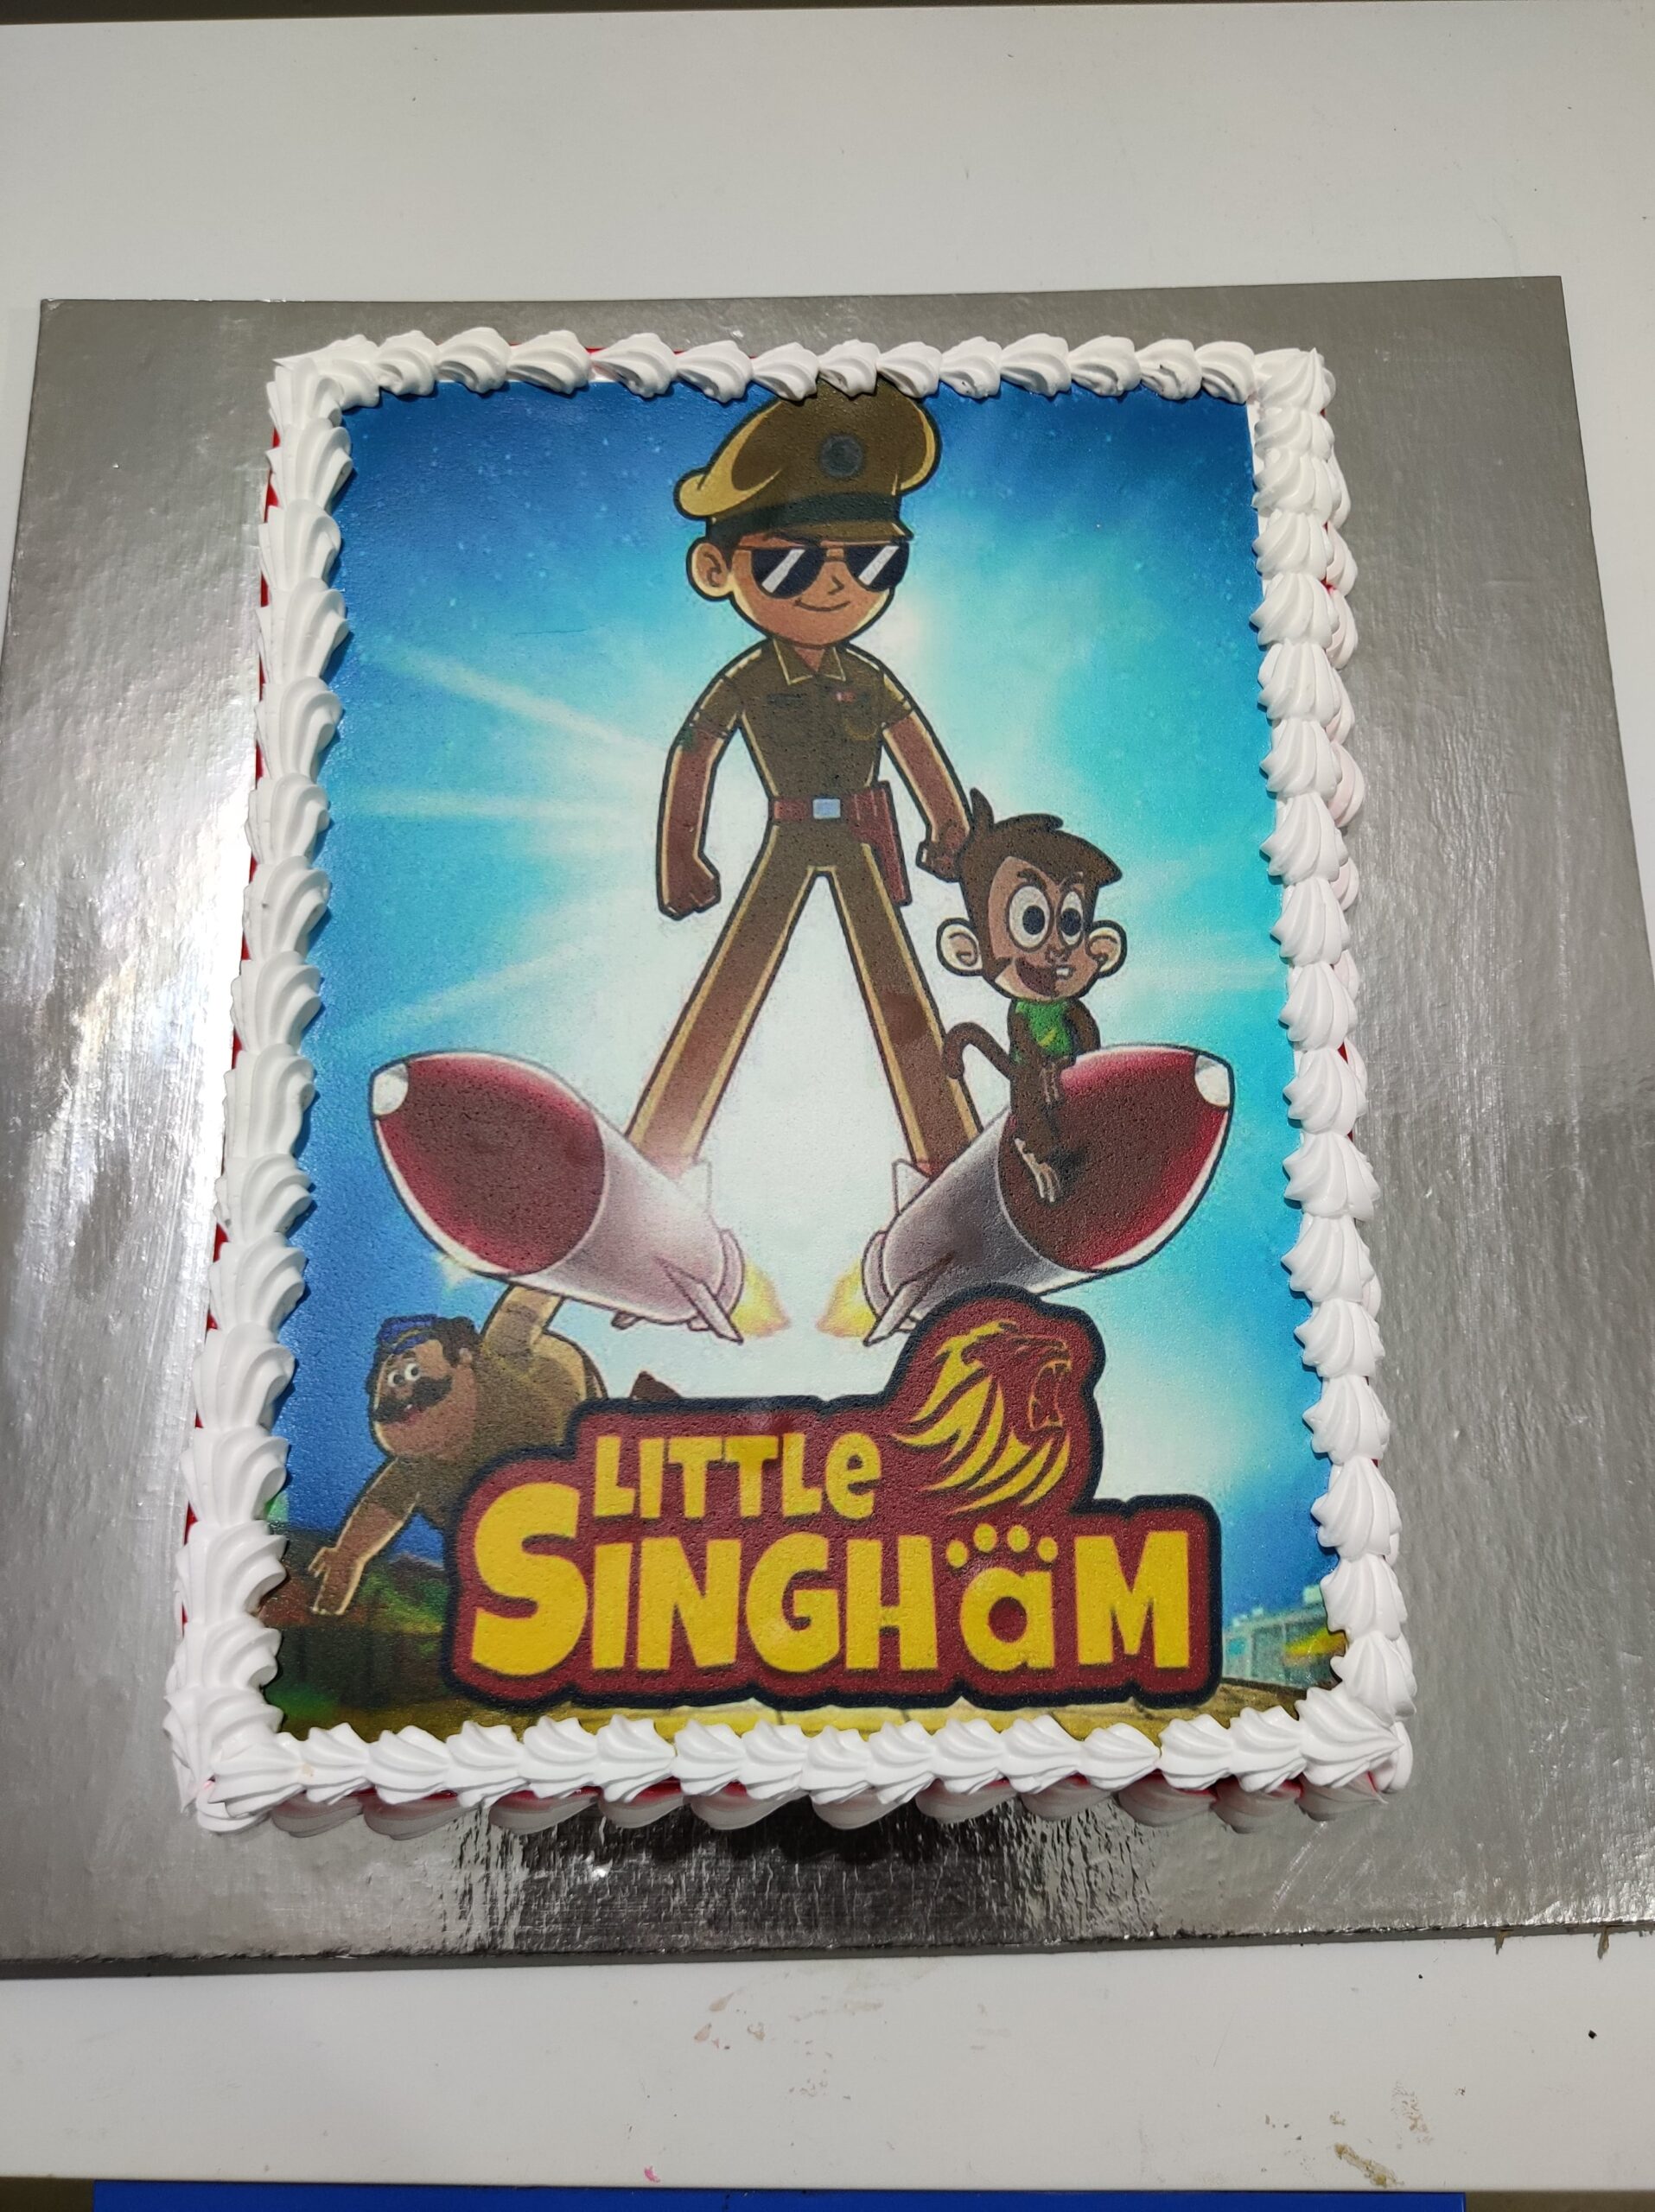 Little singham cake online | Send & buy Little singham birthday cake |-sonthuy.vn